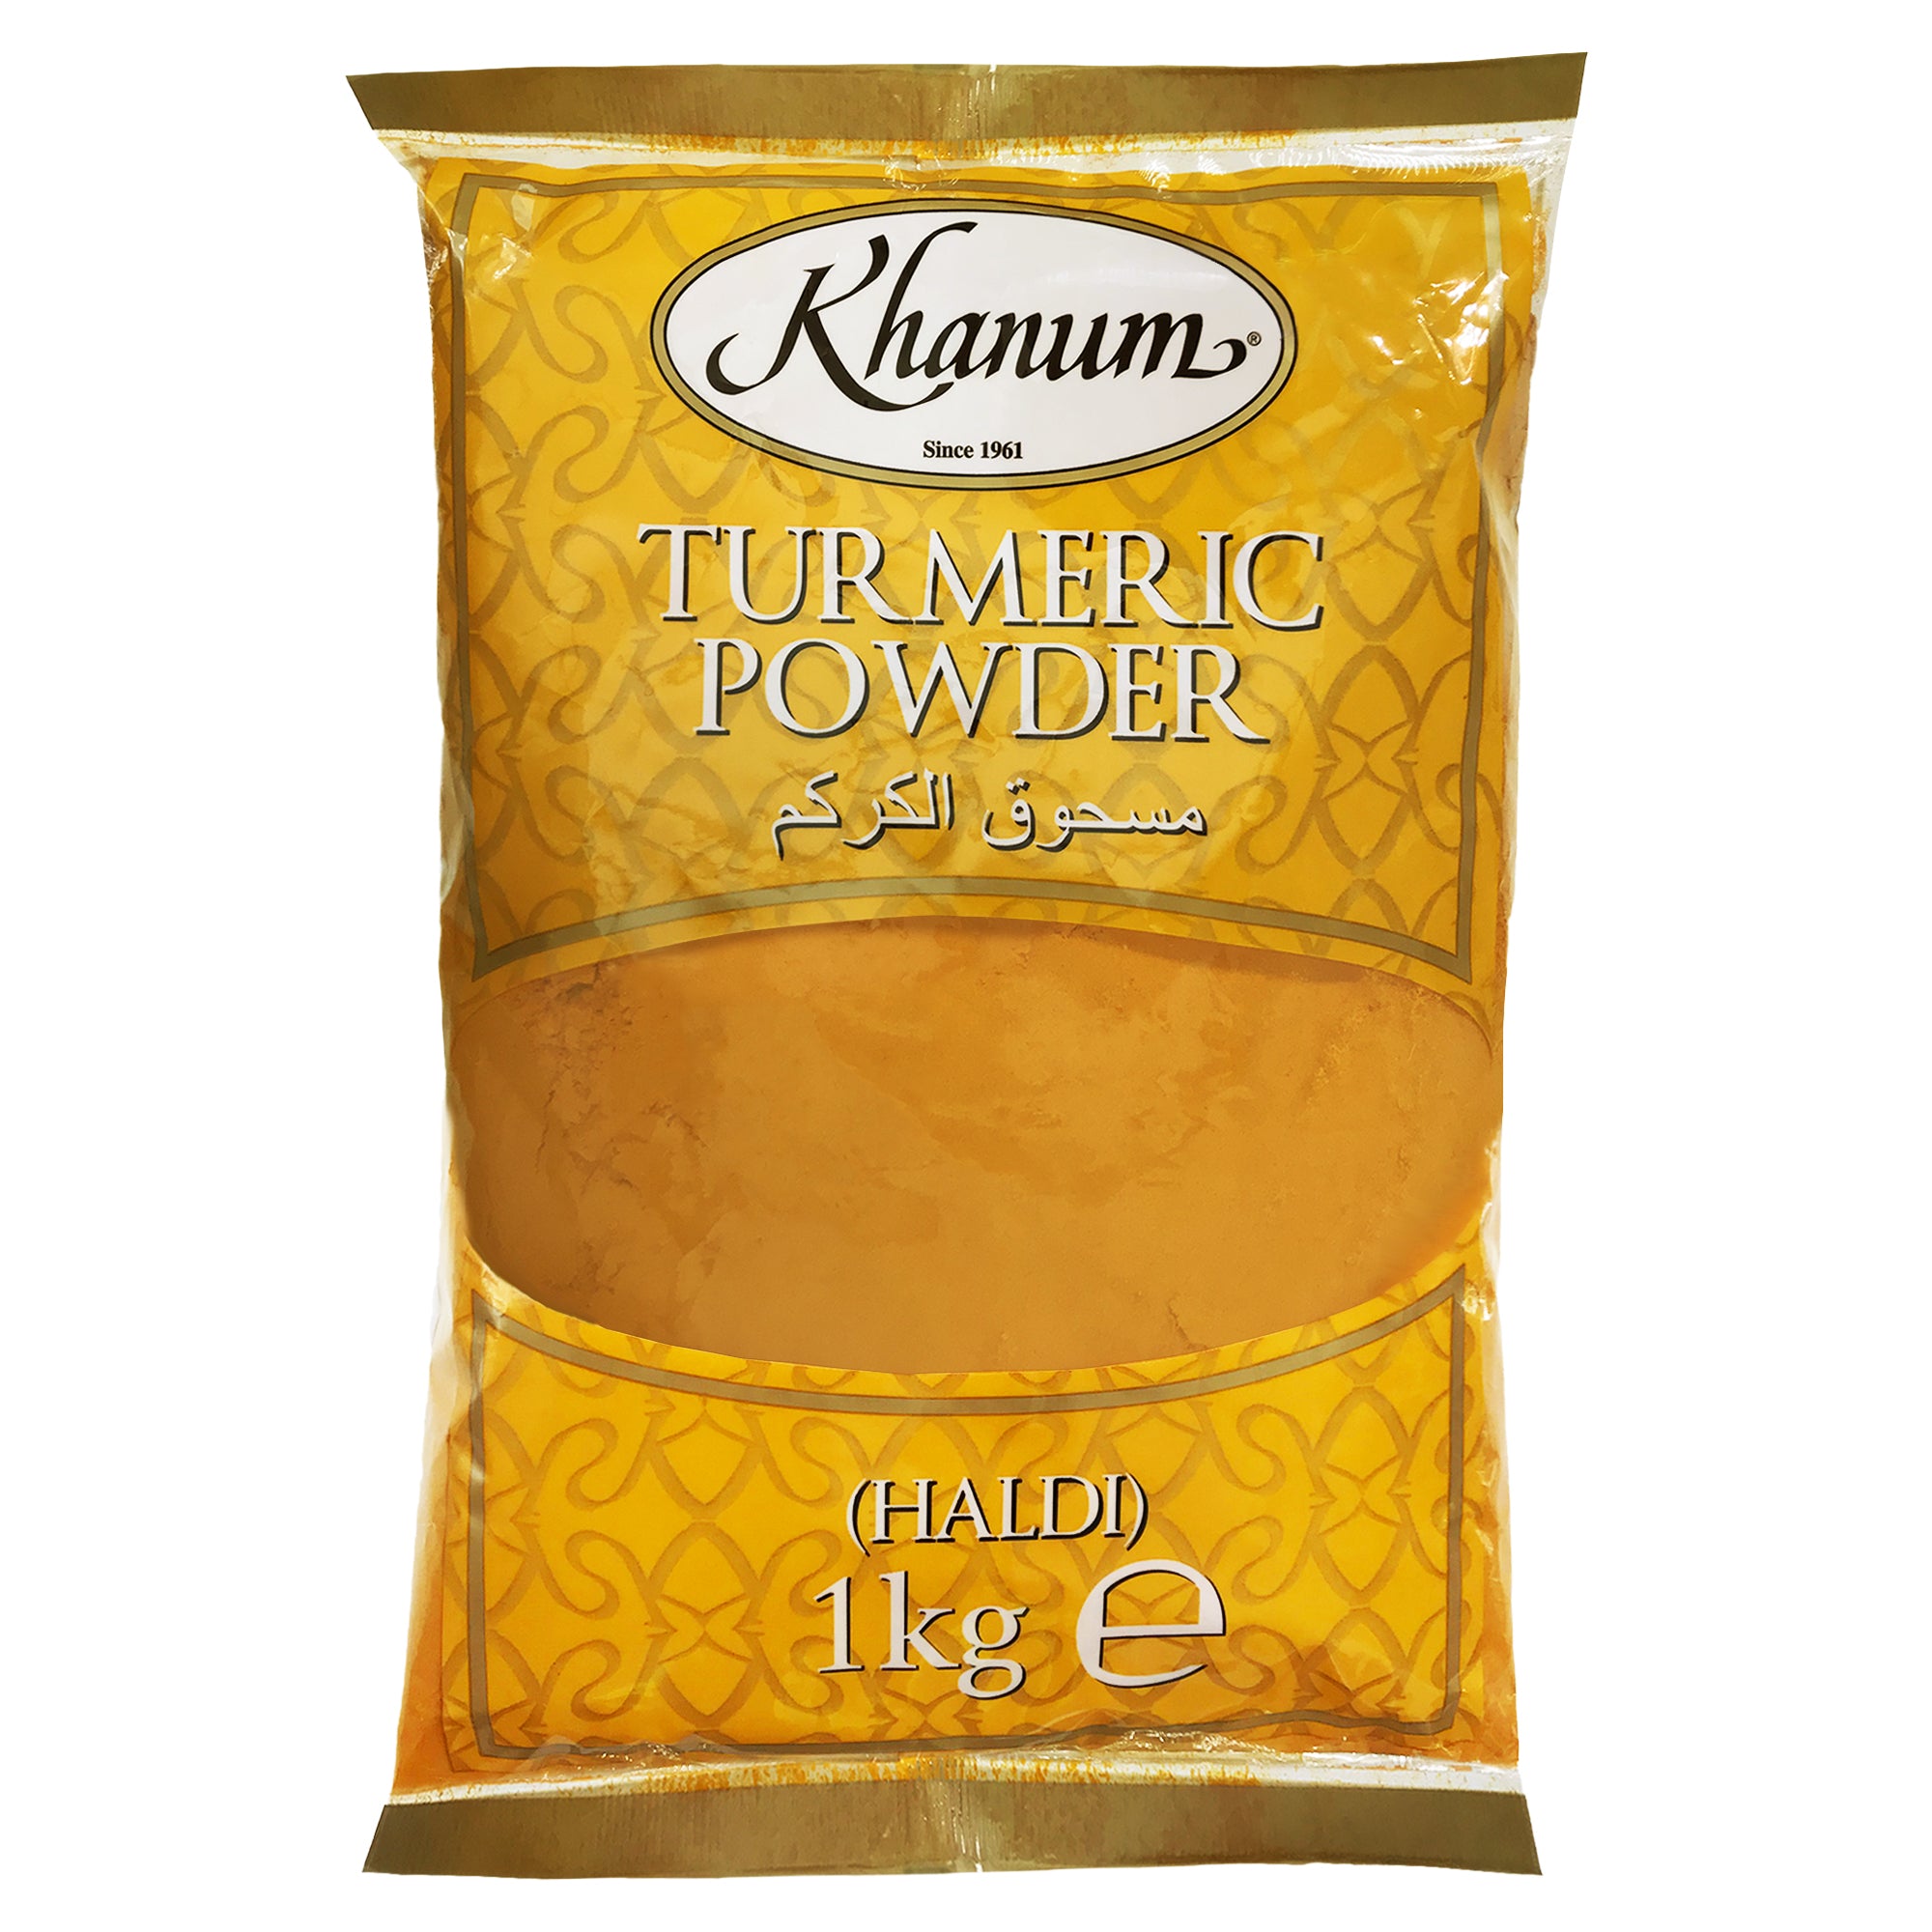 Khanum Turmeric Powder (HALDI) 6x1kg